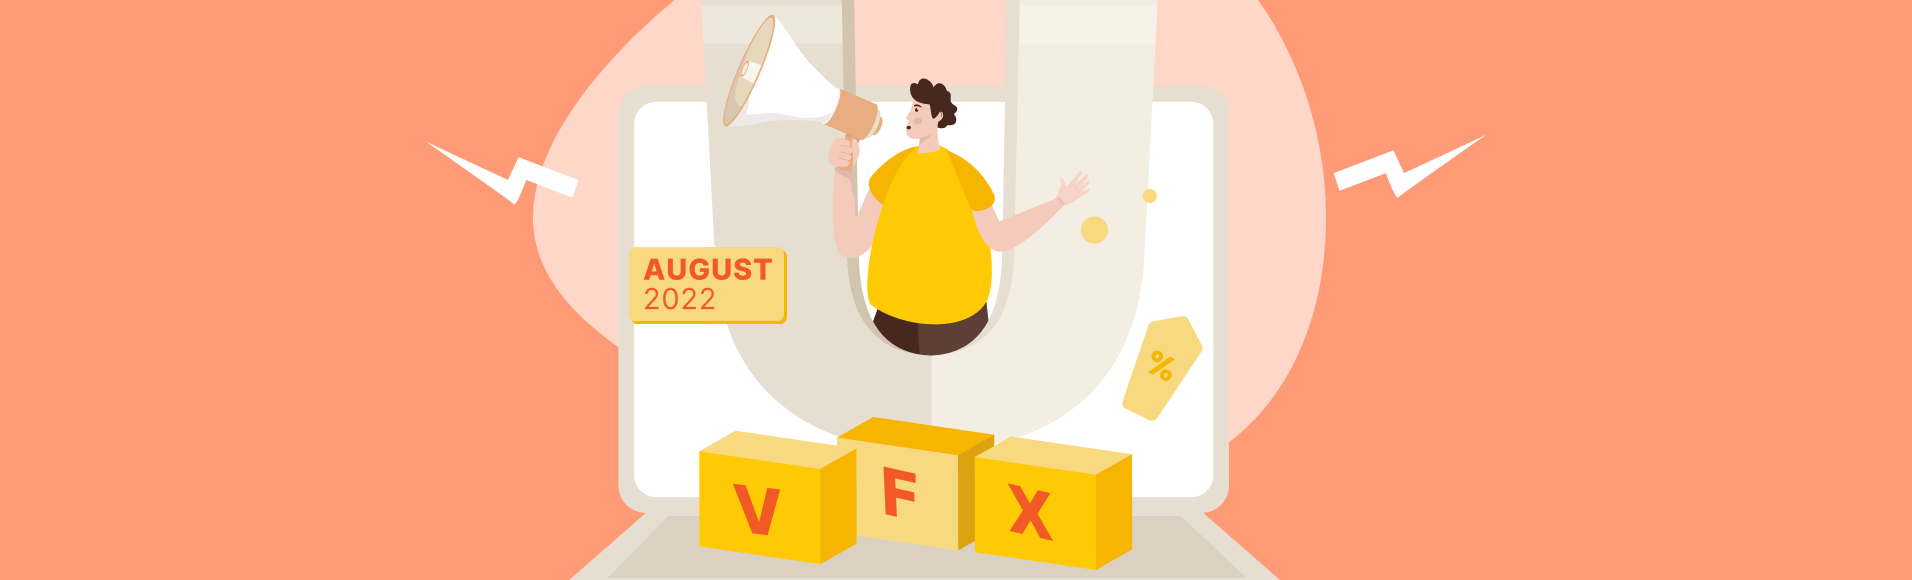 अगस्त 2022 में प्रचार अभियान vfxAlert